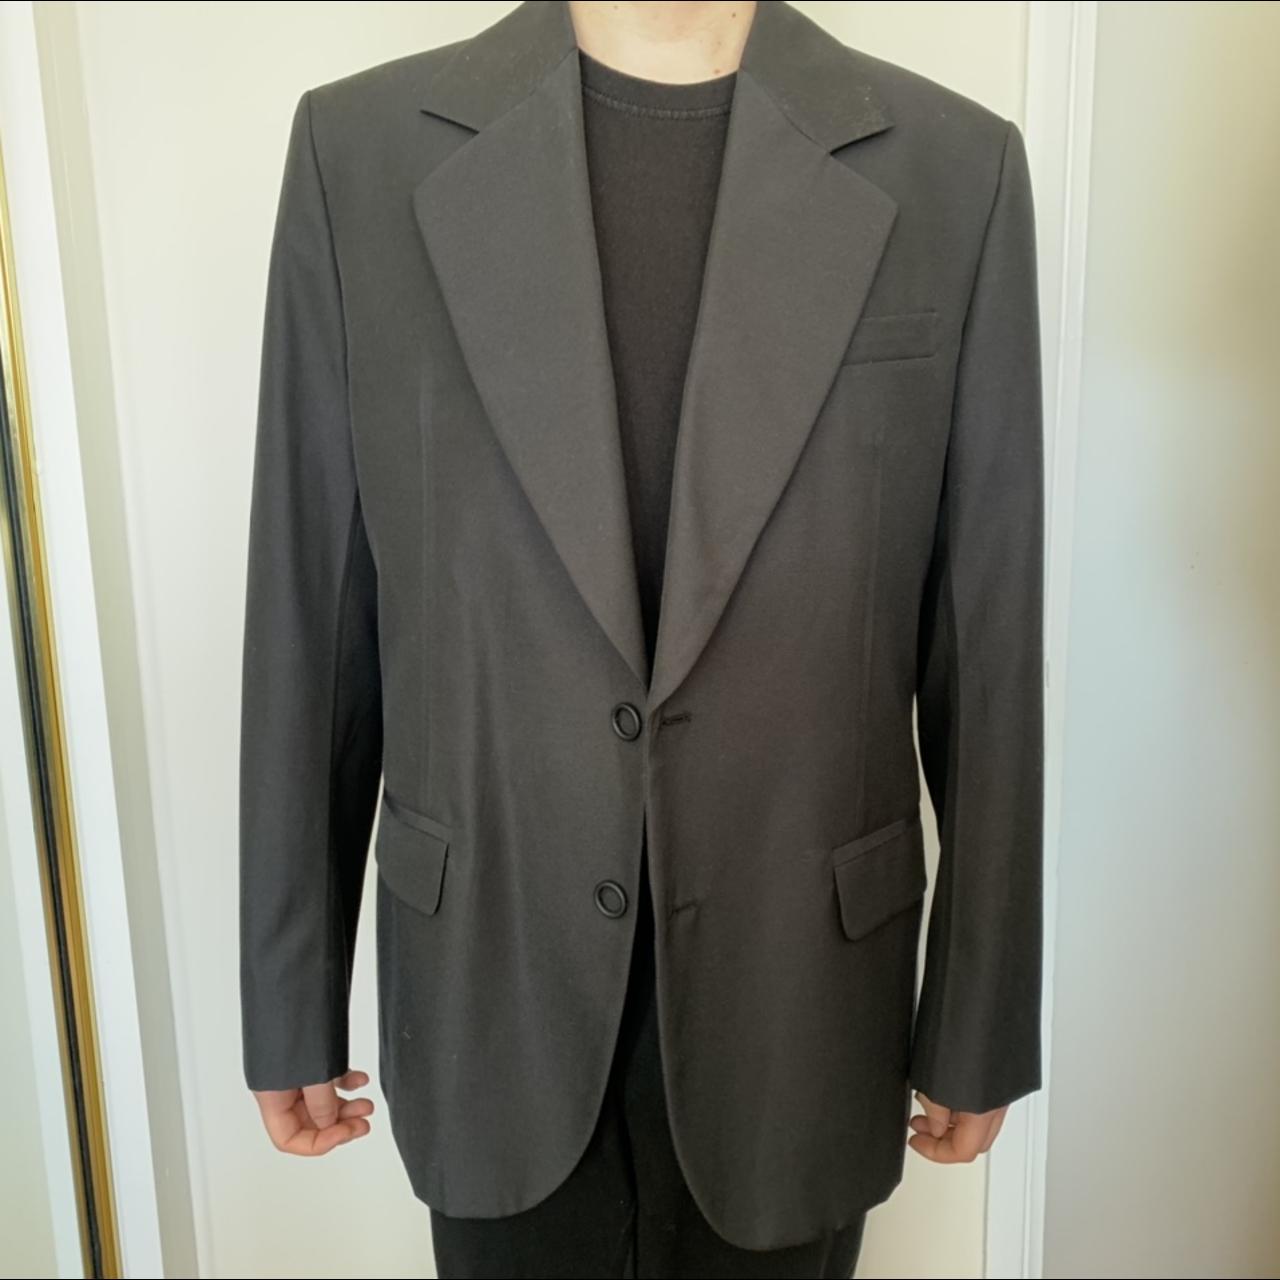 Acne studio suit jacket Size :50 - Depop